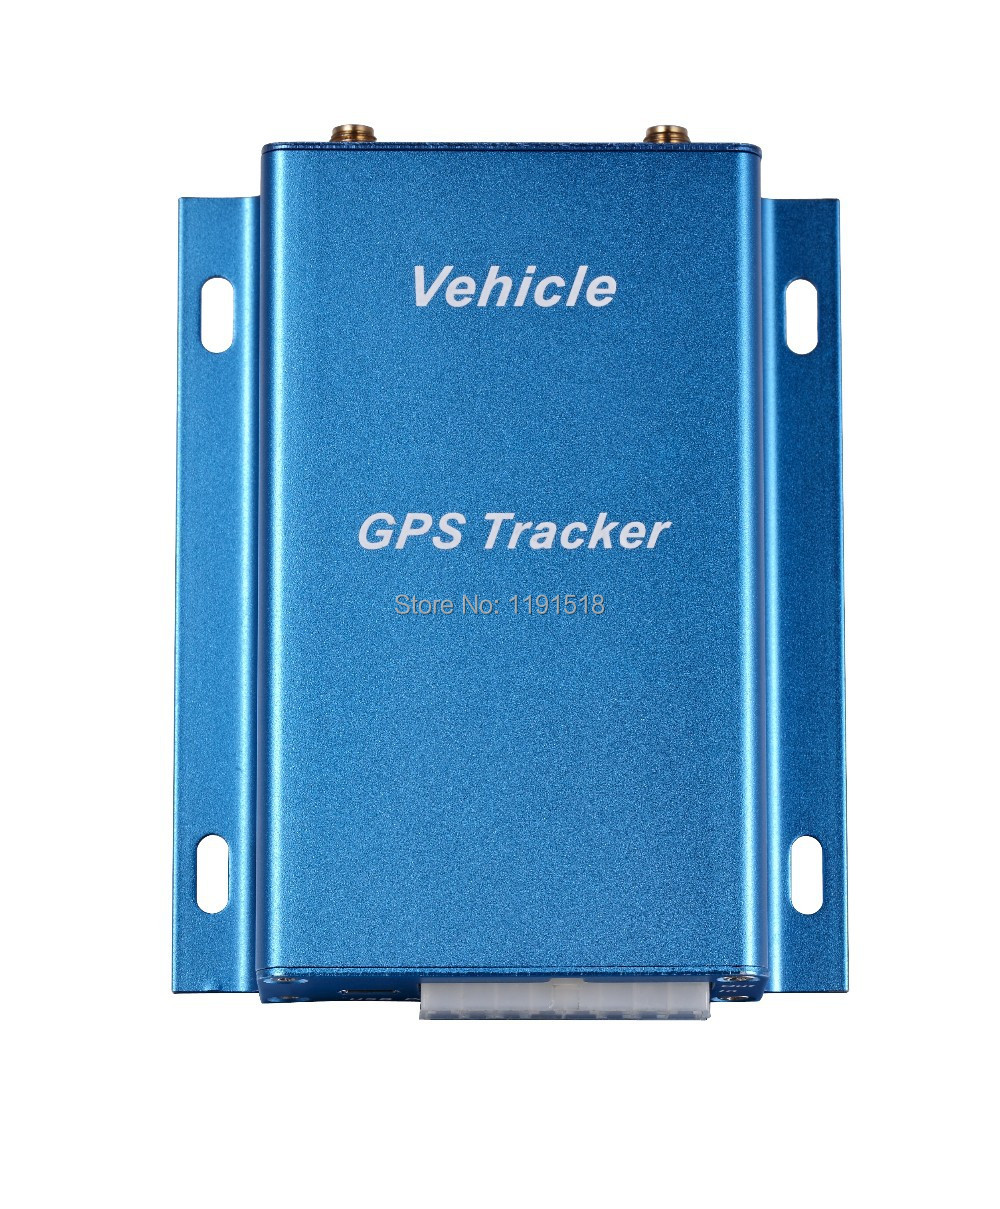   Telematic  -           GPS VT310